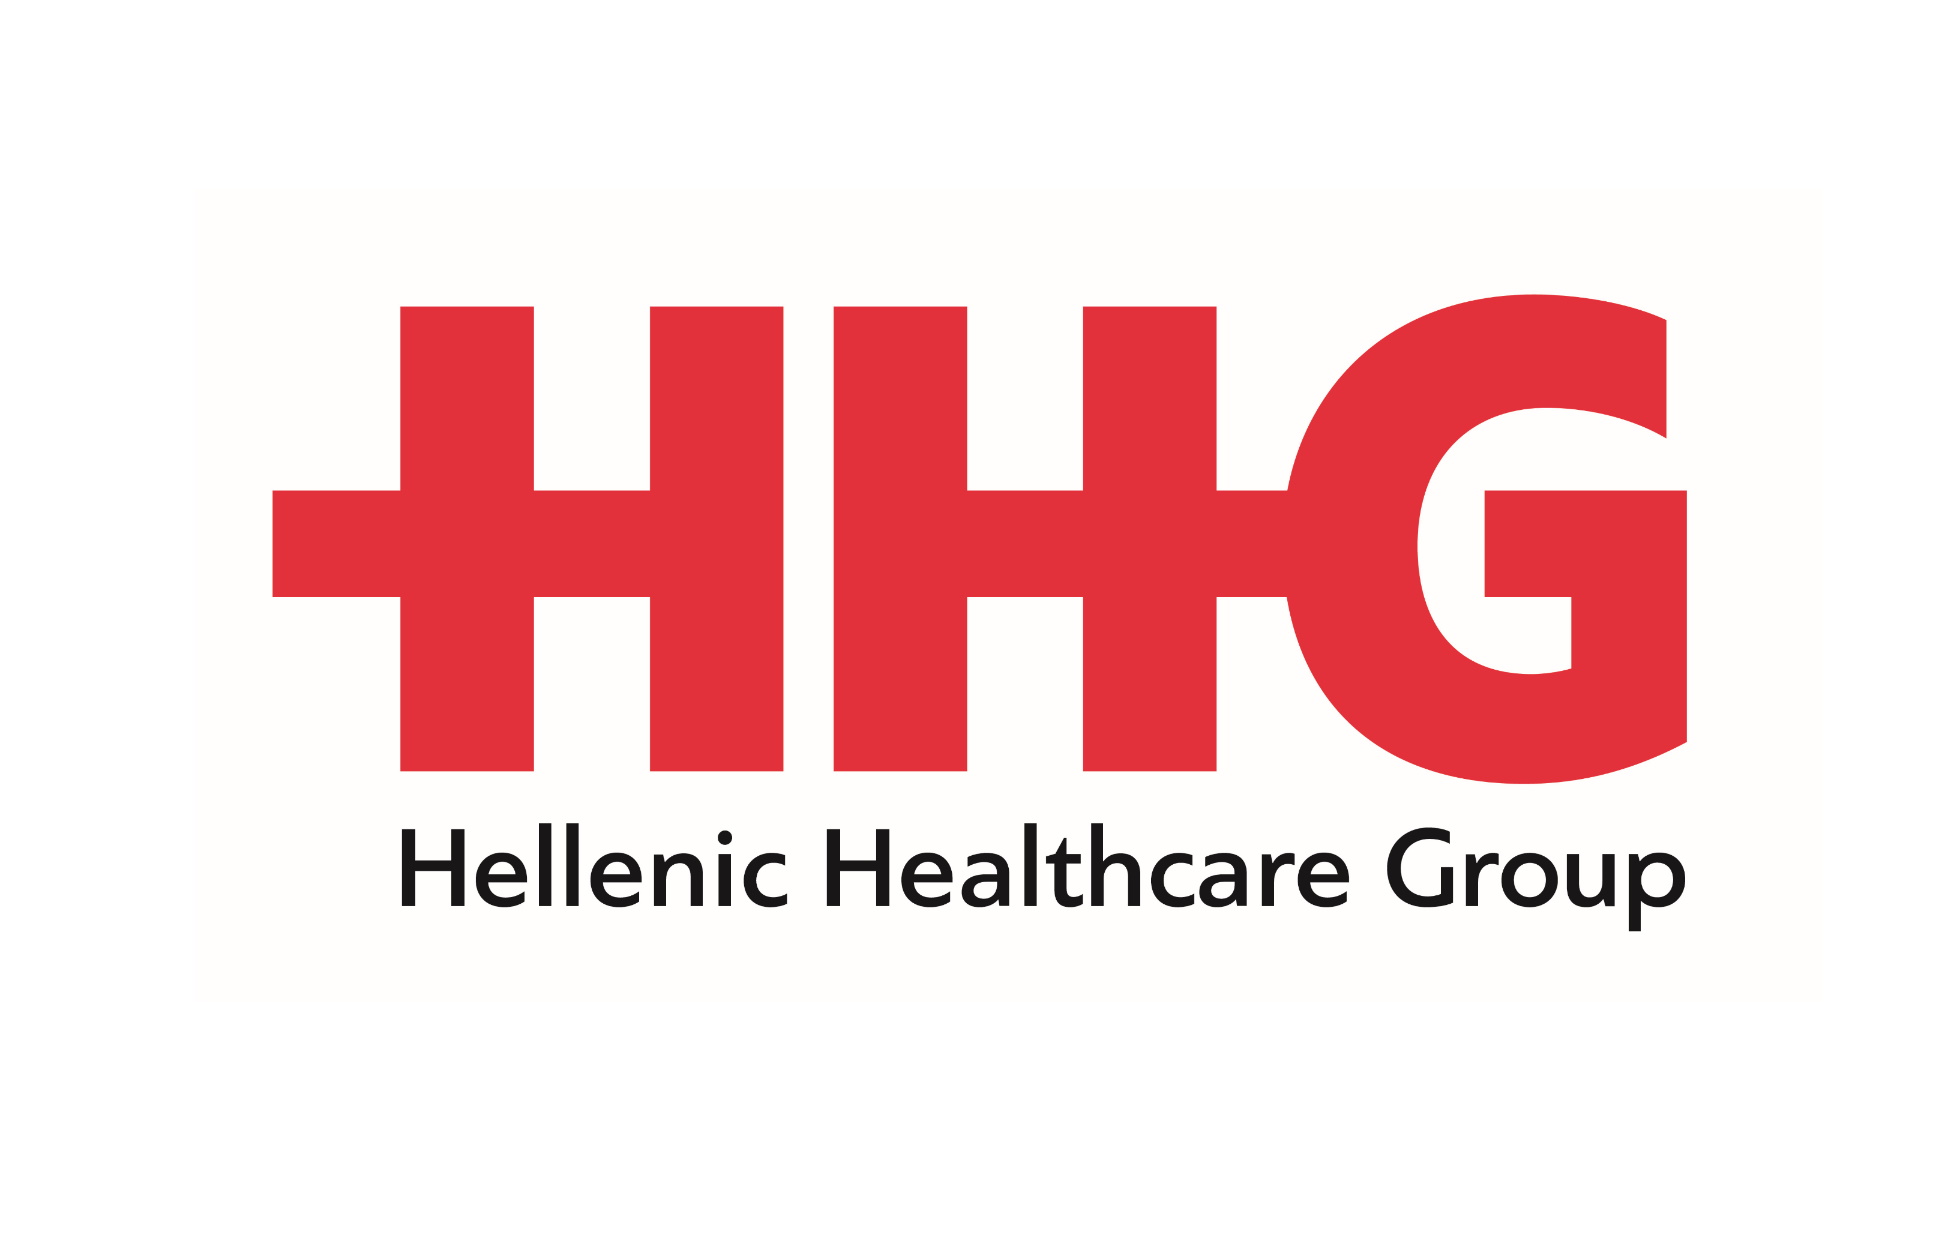 Ενίσχυση ΕΣΥ Βορείου Ελλάδας με έμπειρη ιατρική ομάδα του ομίλου HHG